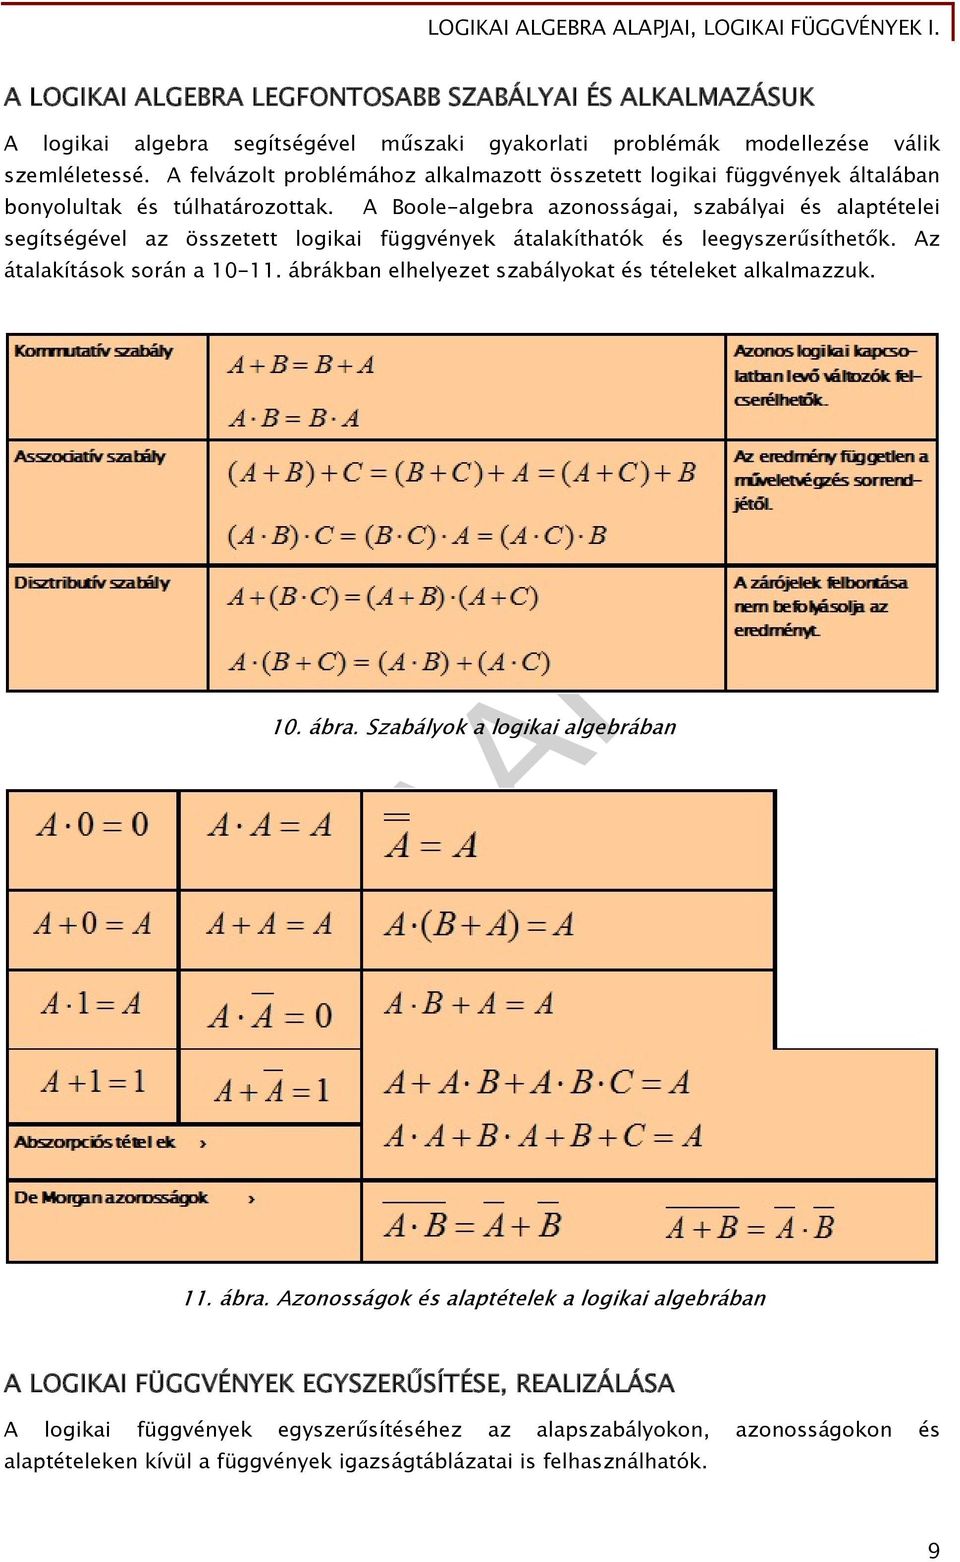 oole-algebra azonosságai, szabályai és alaptételei segítségével az összetett logikai függvények átalakíthatók és leegyszerűsíthetők. z átalakítások során a 10-11.